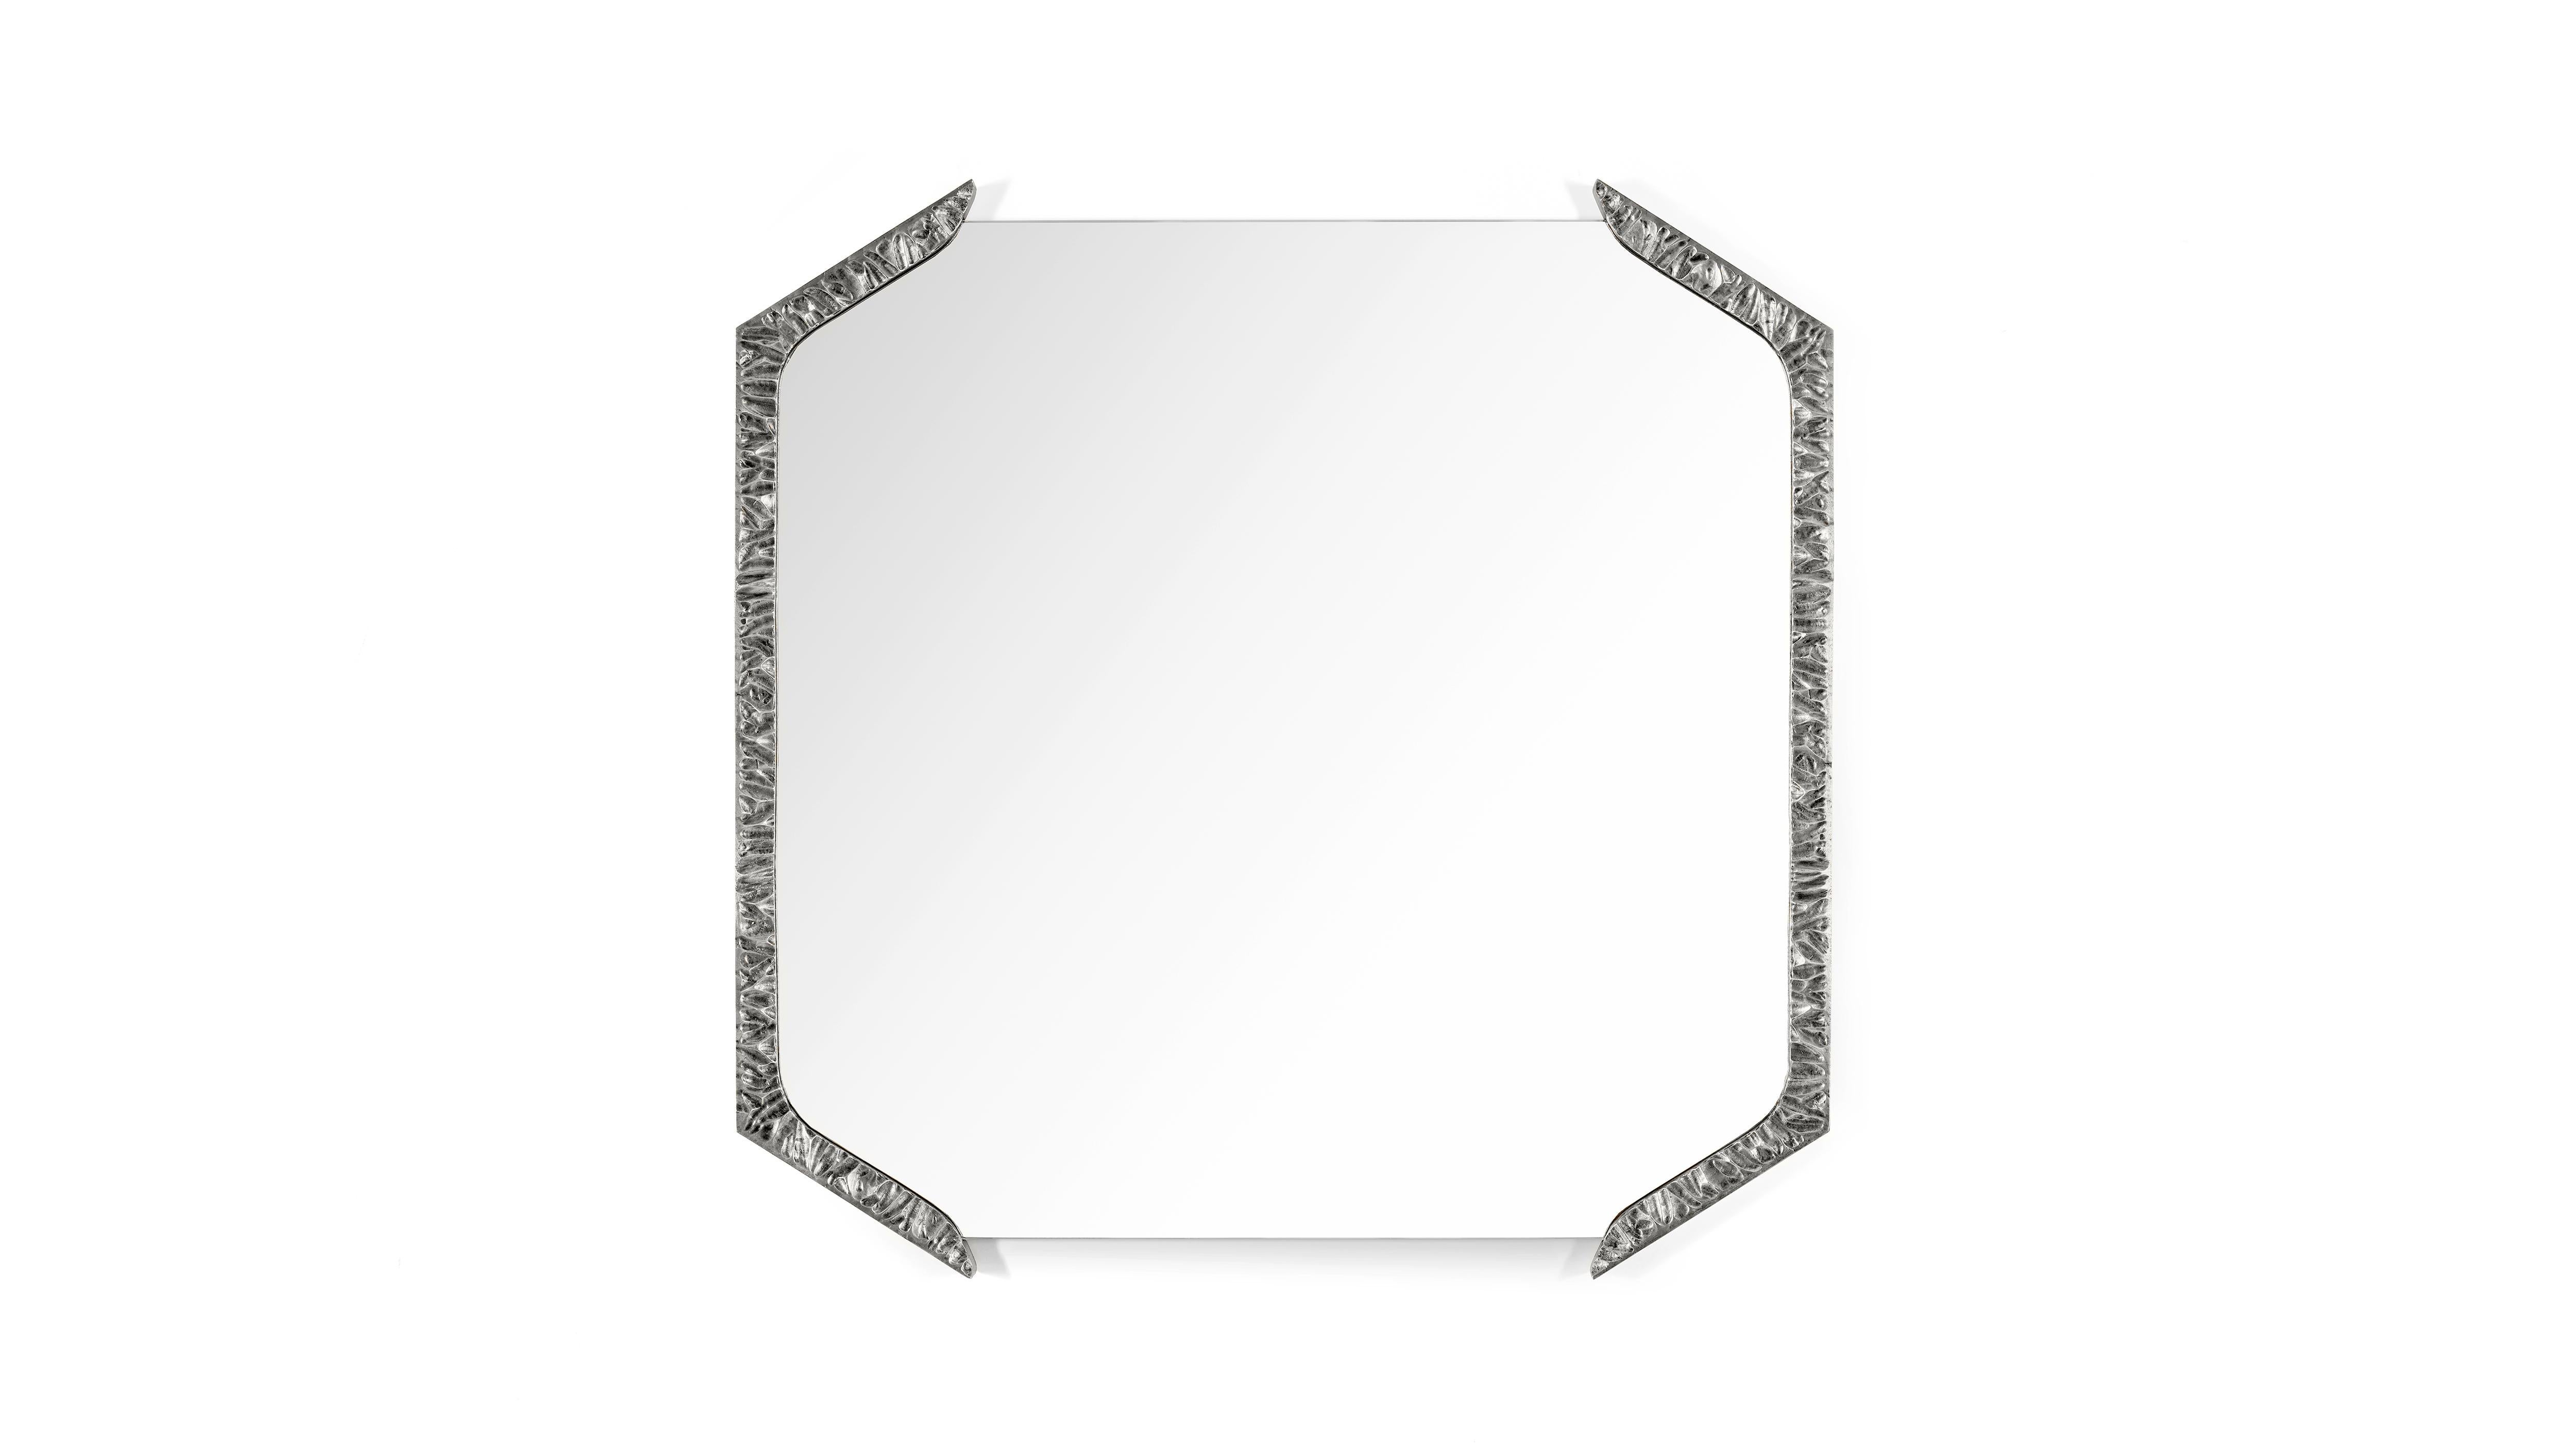 Miroir carré Alentejo Nickel par InsidherLand
Dimensions : D 3 x L 85 x H 85 cm.
MATERIAL : Laiton coulé recouvert d'un bain de nickel, miroir transparent.
22 kg.
Disponible dans d'autres finitions.

Le miroir Alentejo a une approche conceptuelle